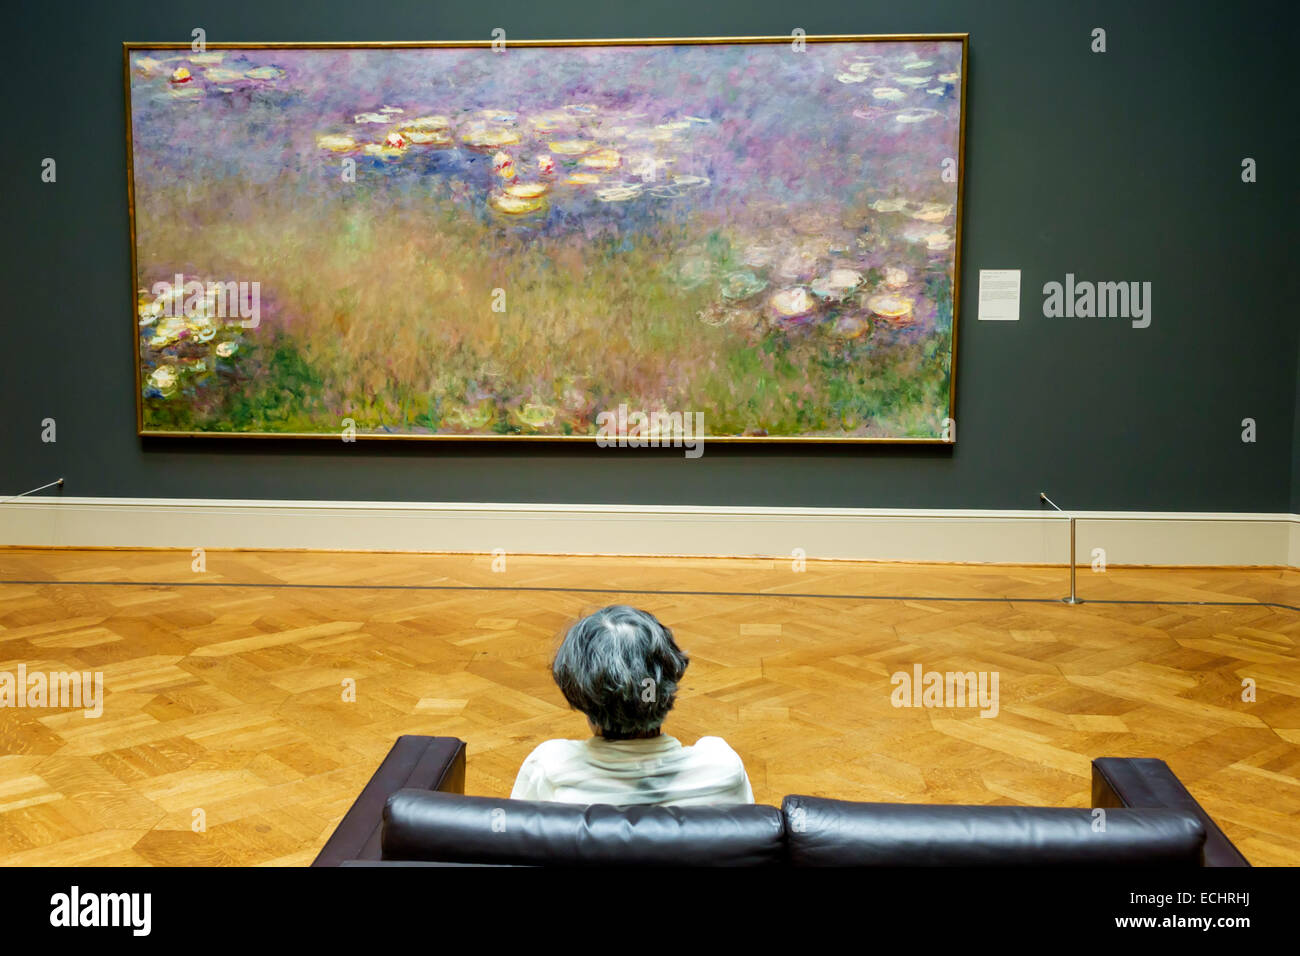 Saint St. Louis Missouri,Forest Park,Saint Louis Art Museum,galleria,mostra collezione arte,Claude Monet,artista francese,impressionismo,Wat Foto Stock